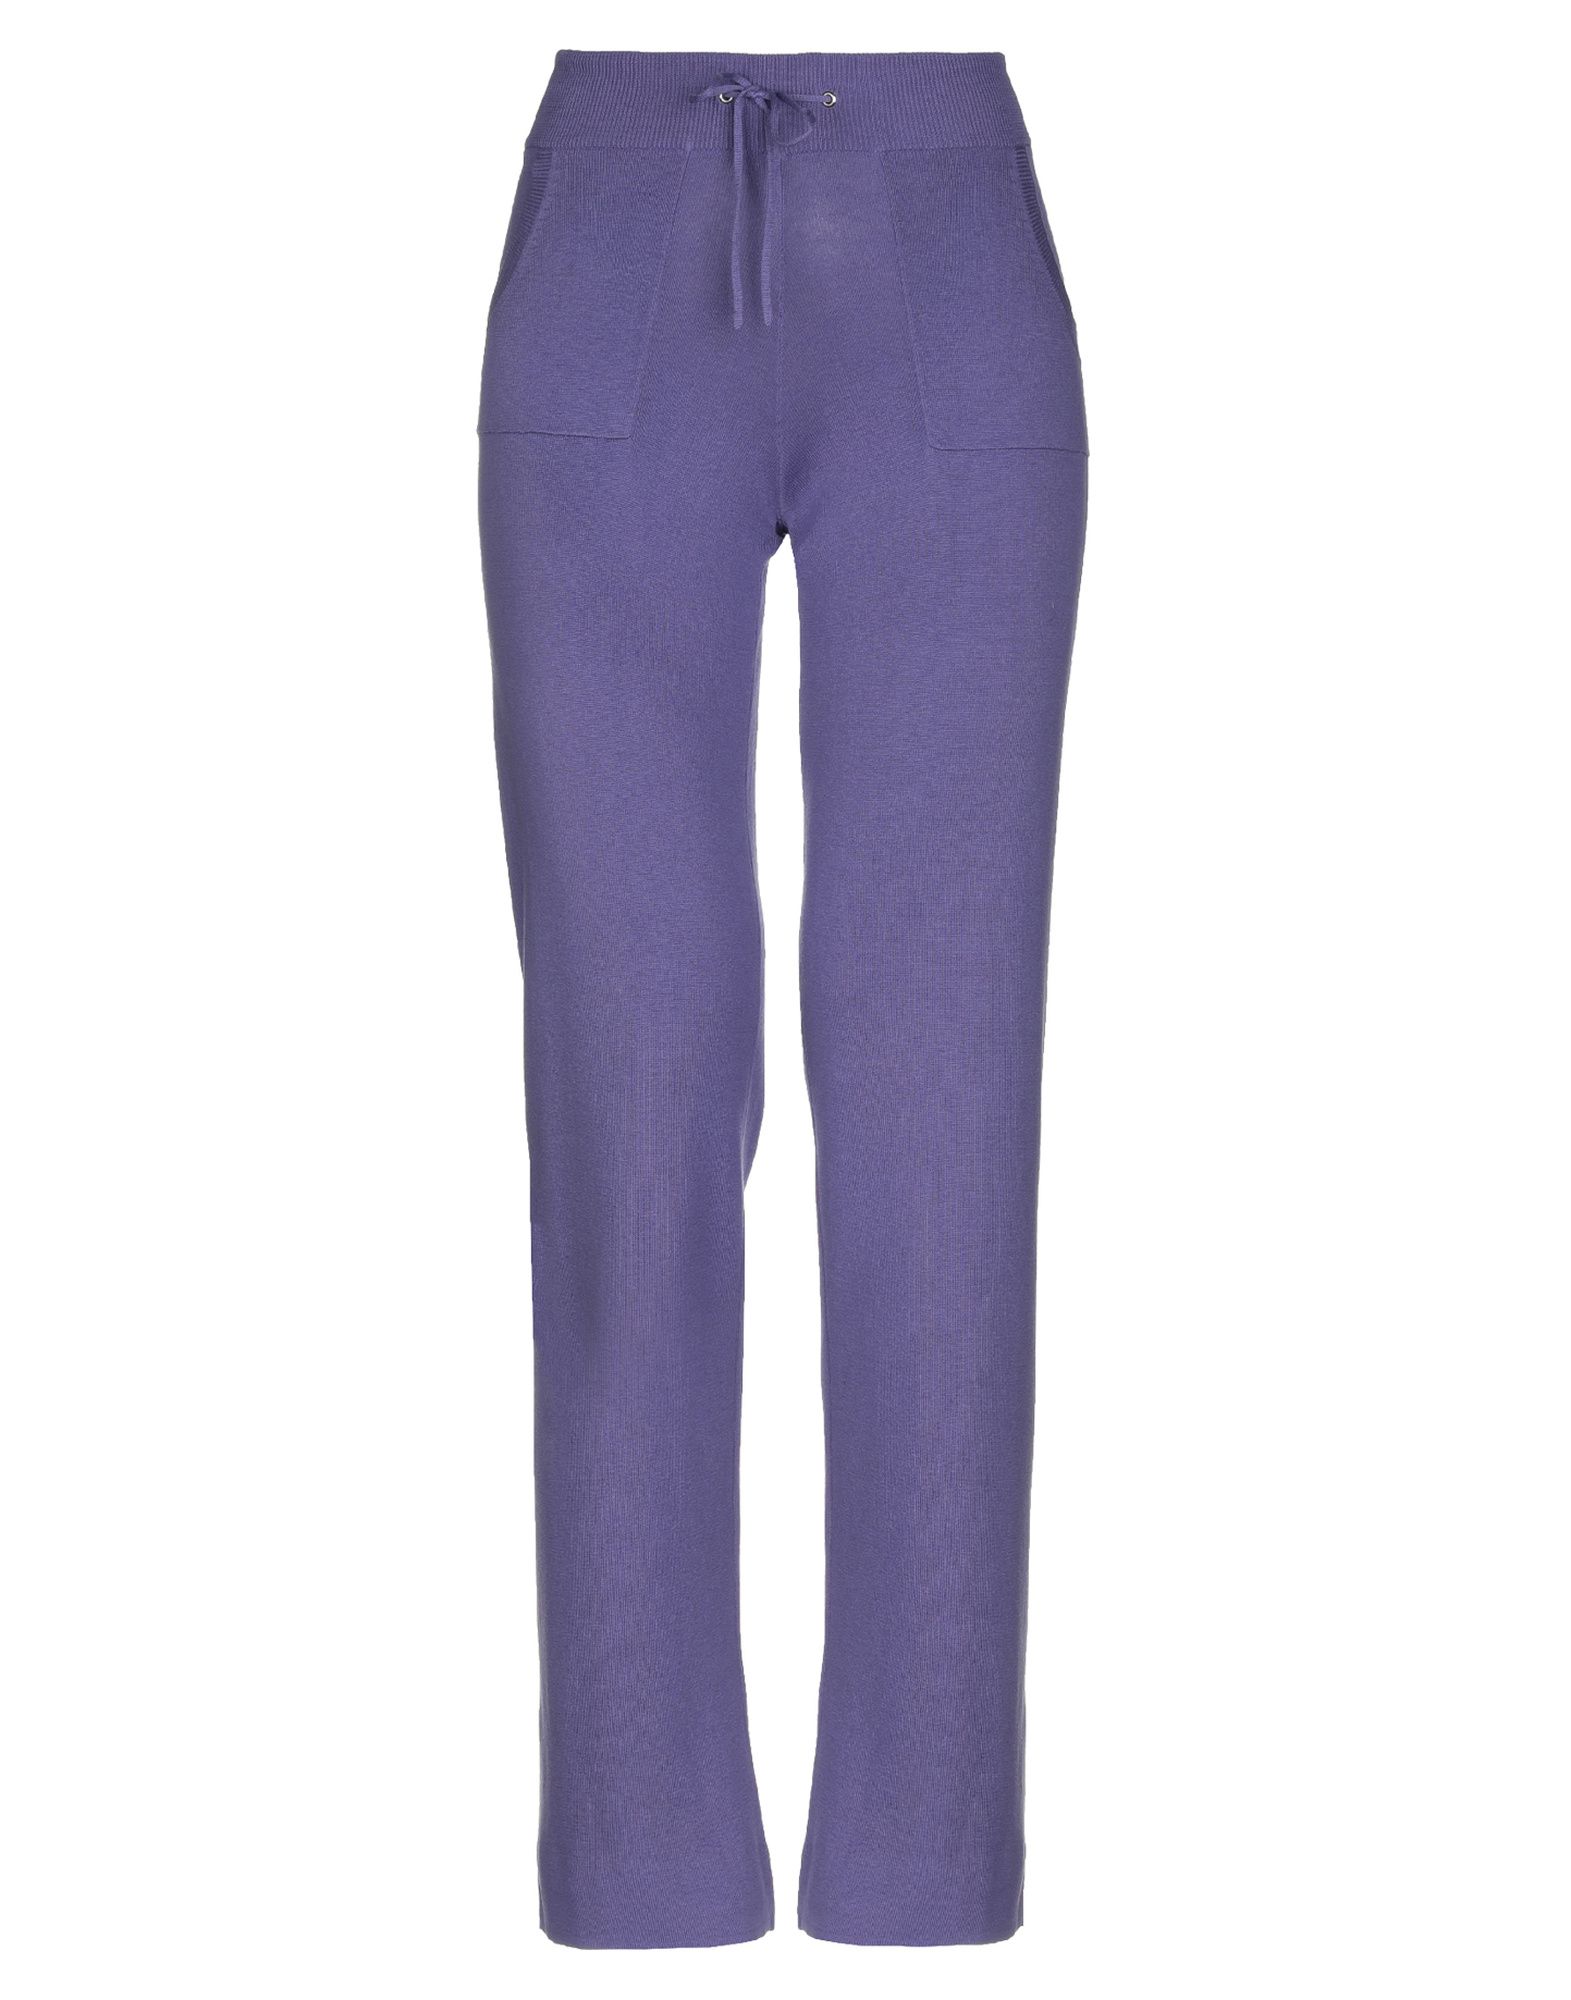 Повседневные брюки  - Синий,Фиолетовый цвет